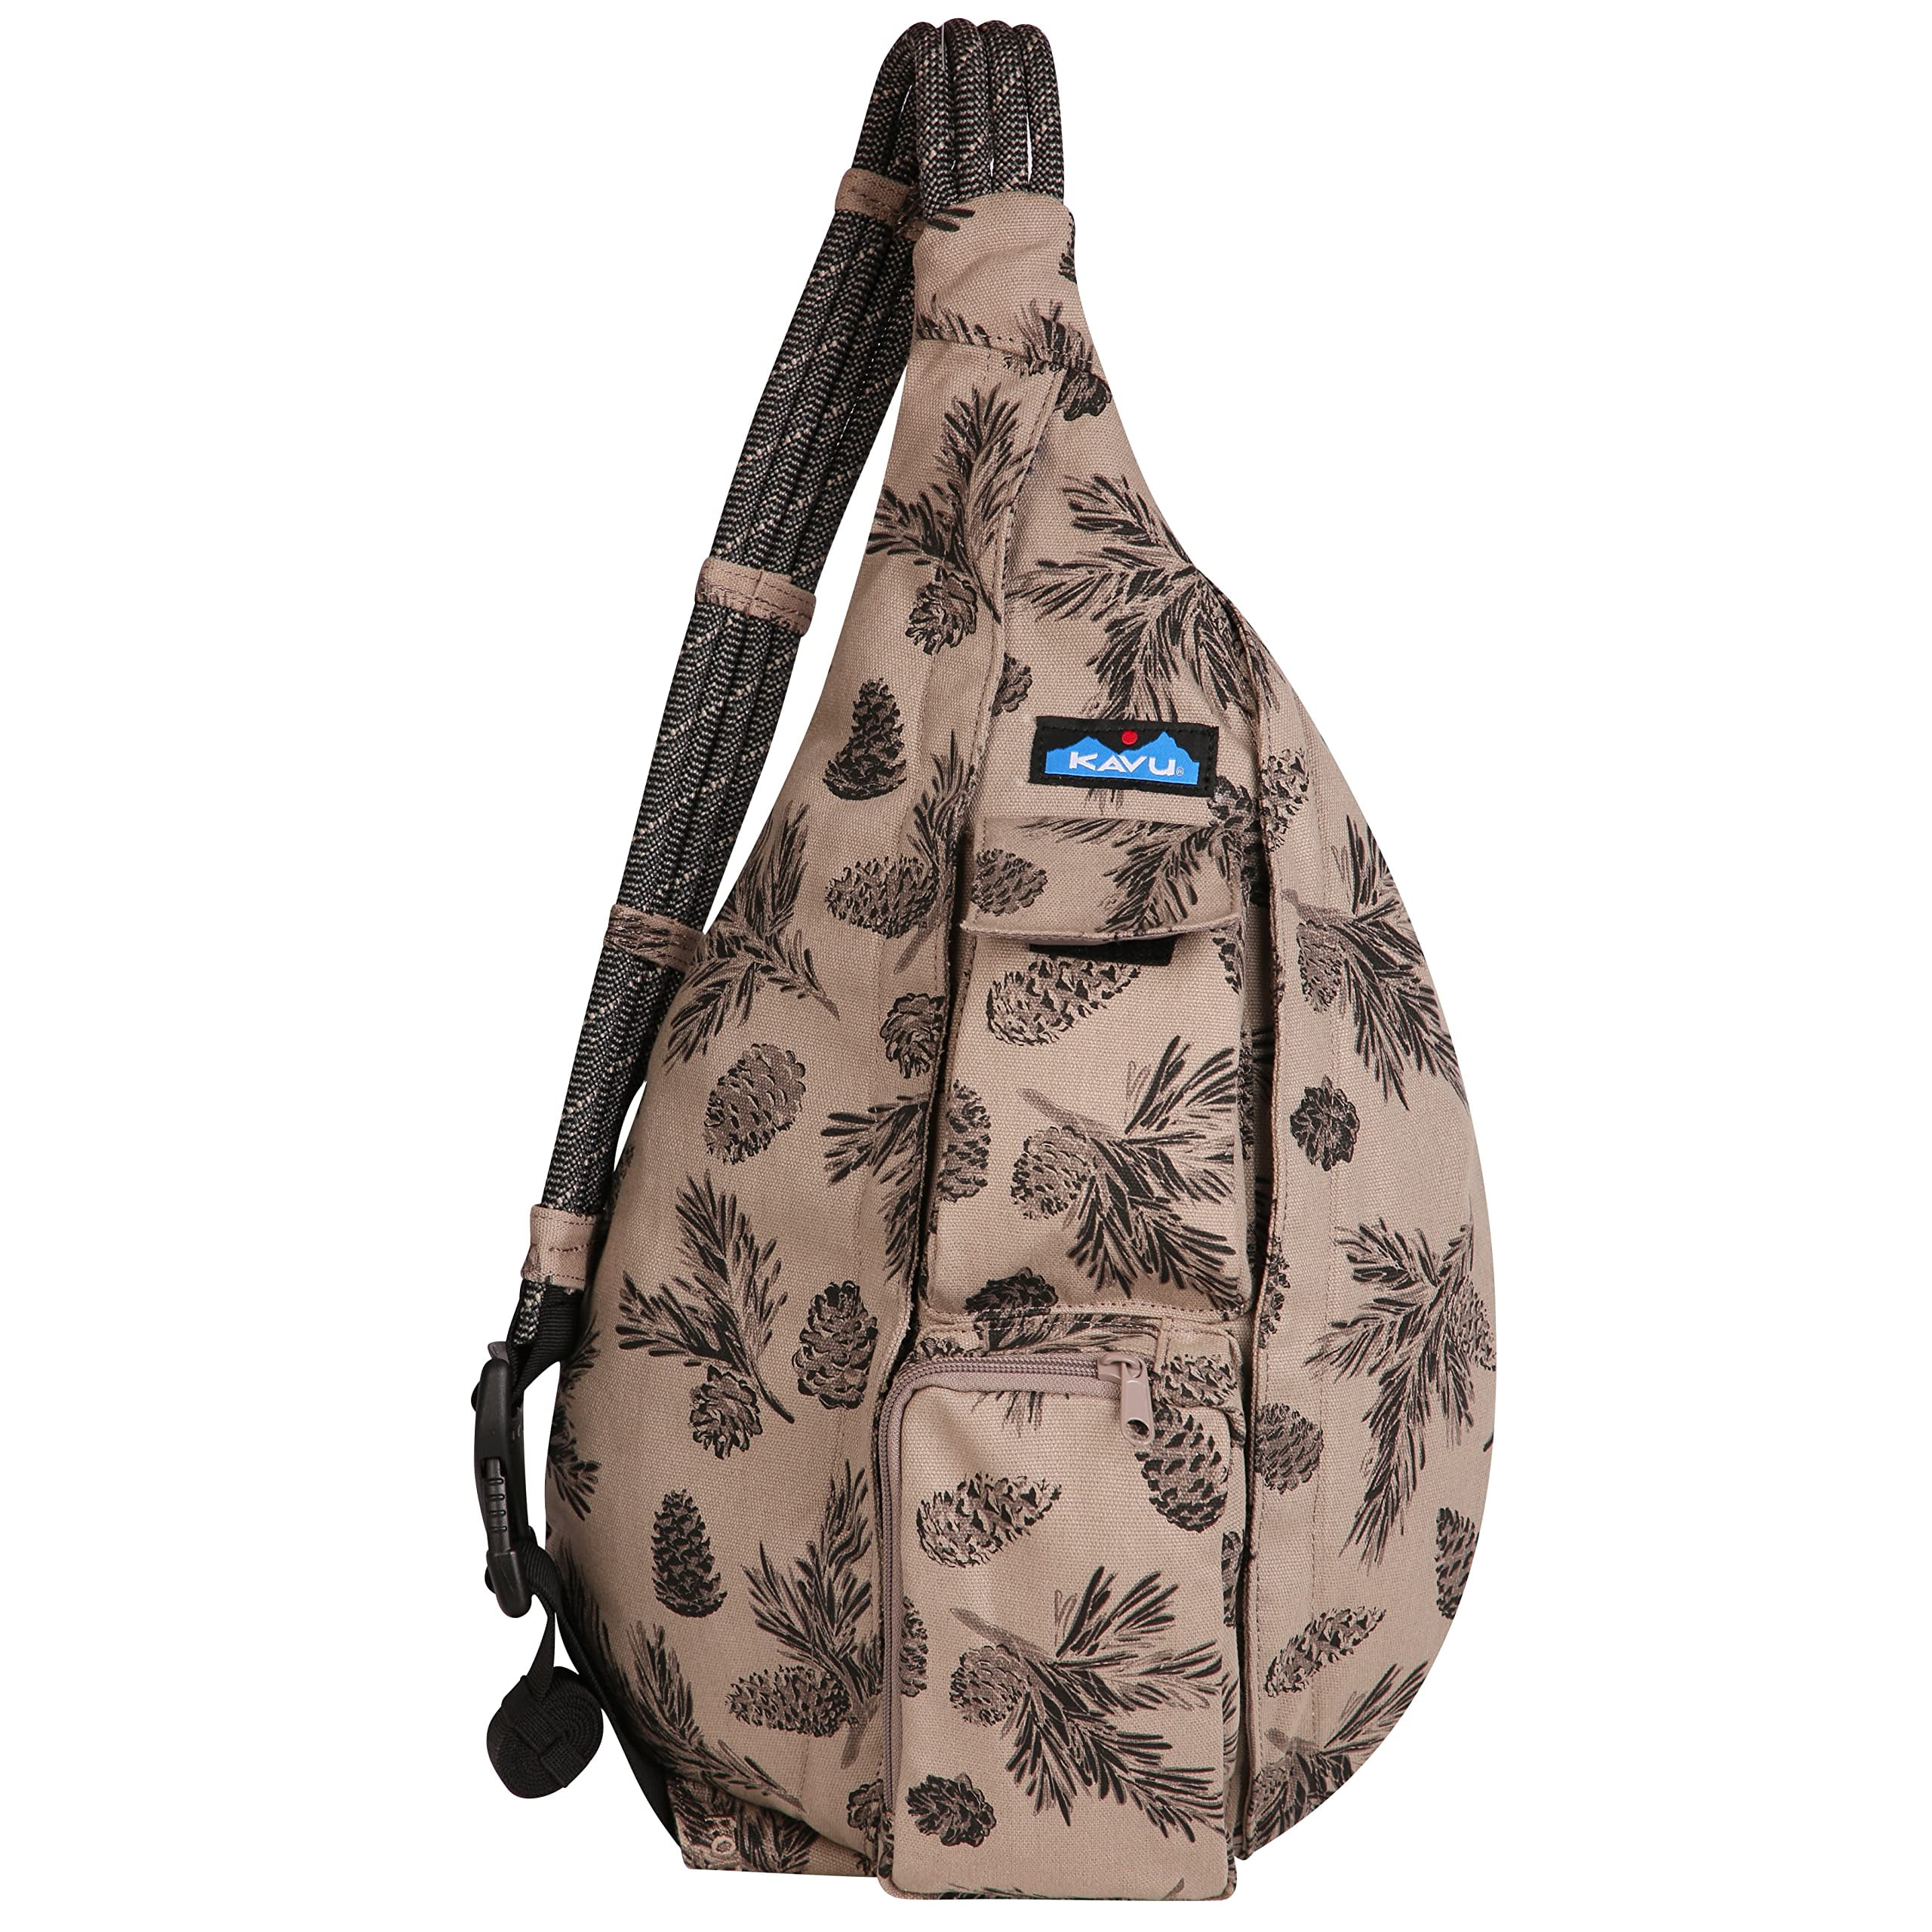 Kavu Rope Sling Bag in Pop Pink | Sling bag, Clothes design, Bags